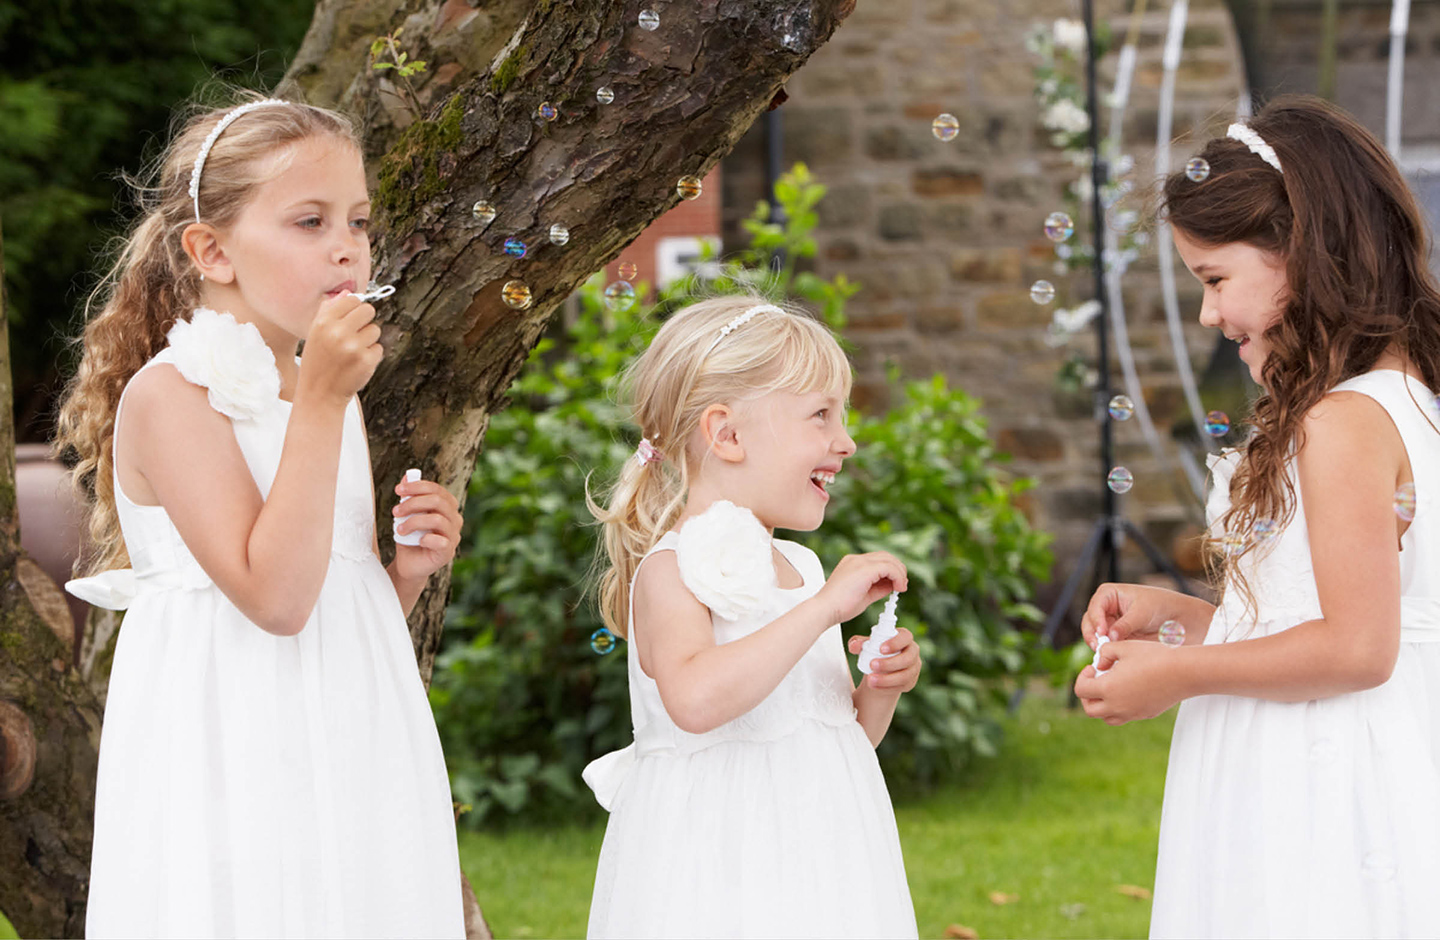 Drei kleine Mädchen, festlich in weißen Kleidern gekleidet, spielen im Garten mit Seifenblasen auf einer Hochzeitsfeier.